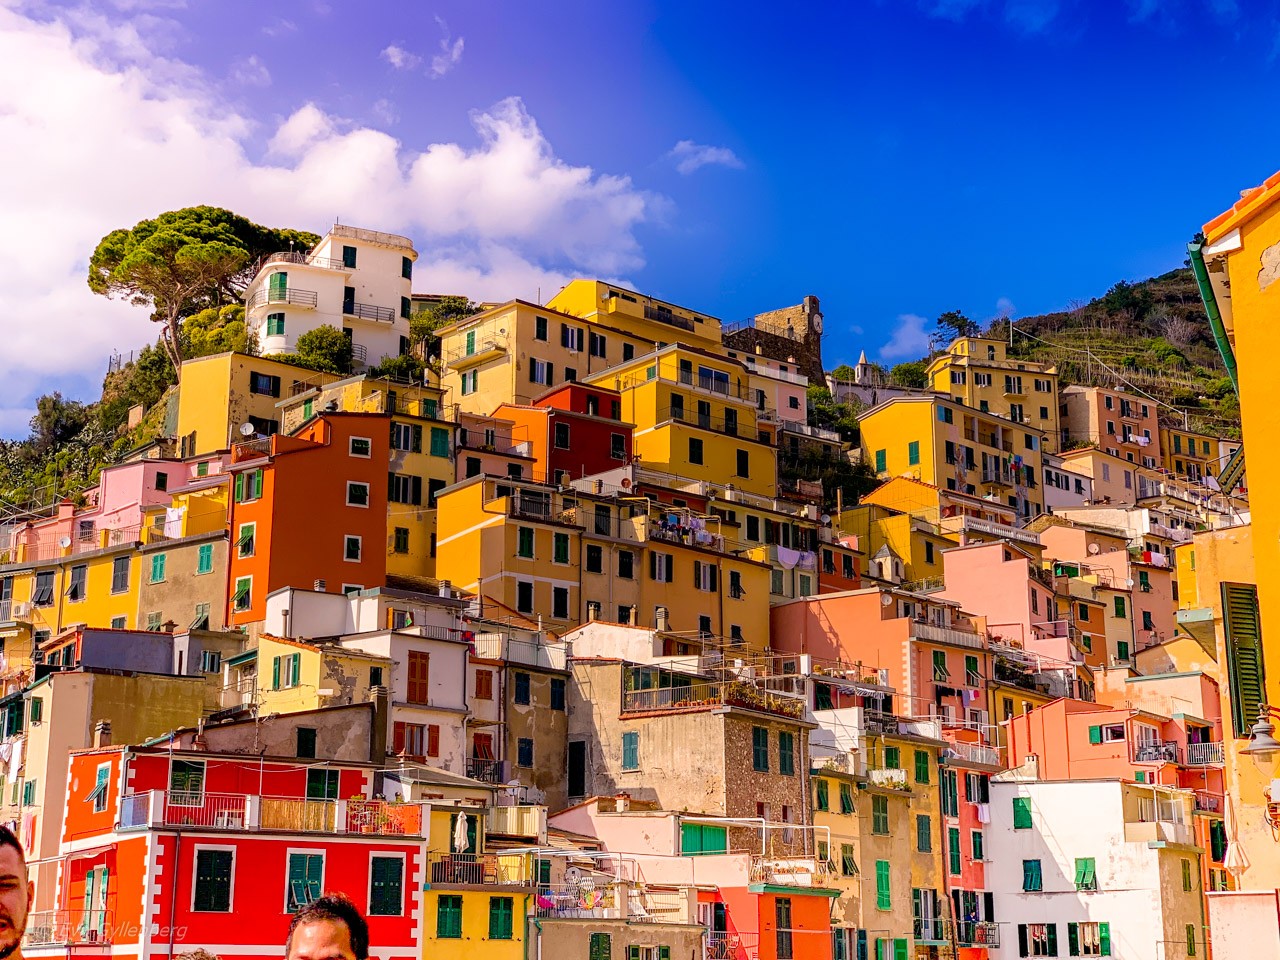 Colorful houses of Riomaggiore